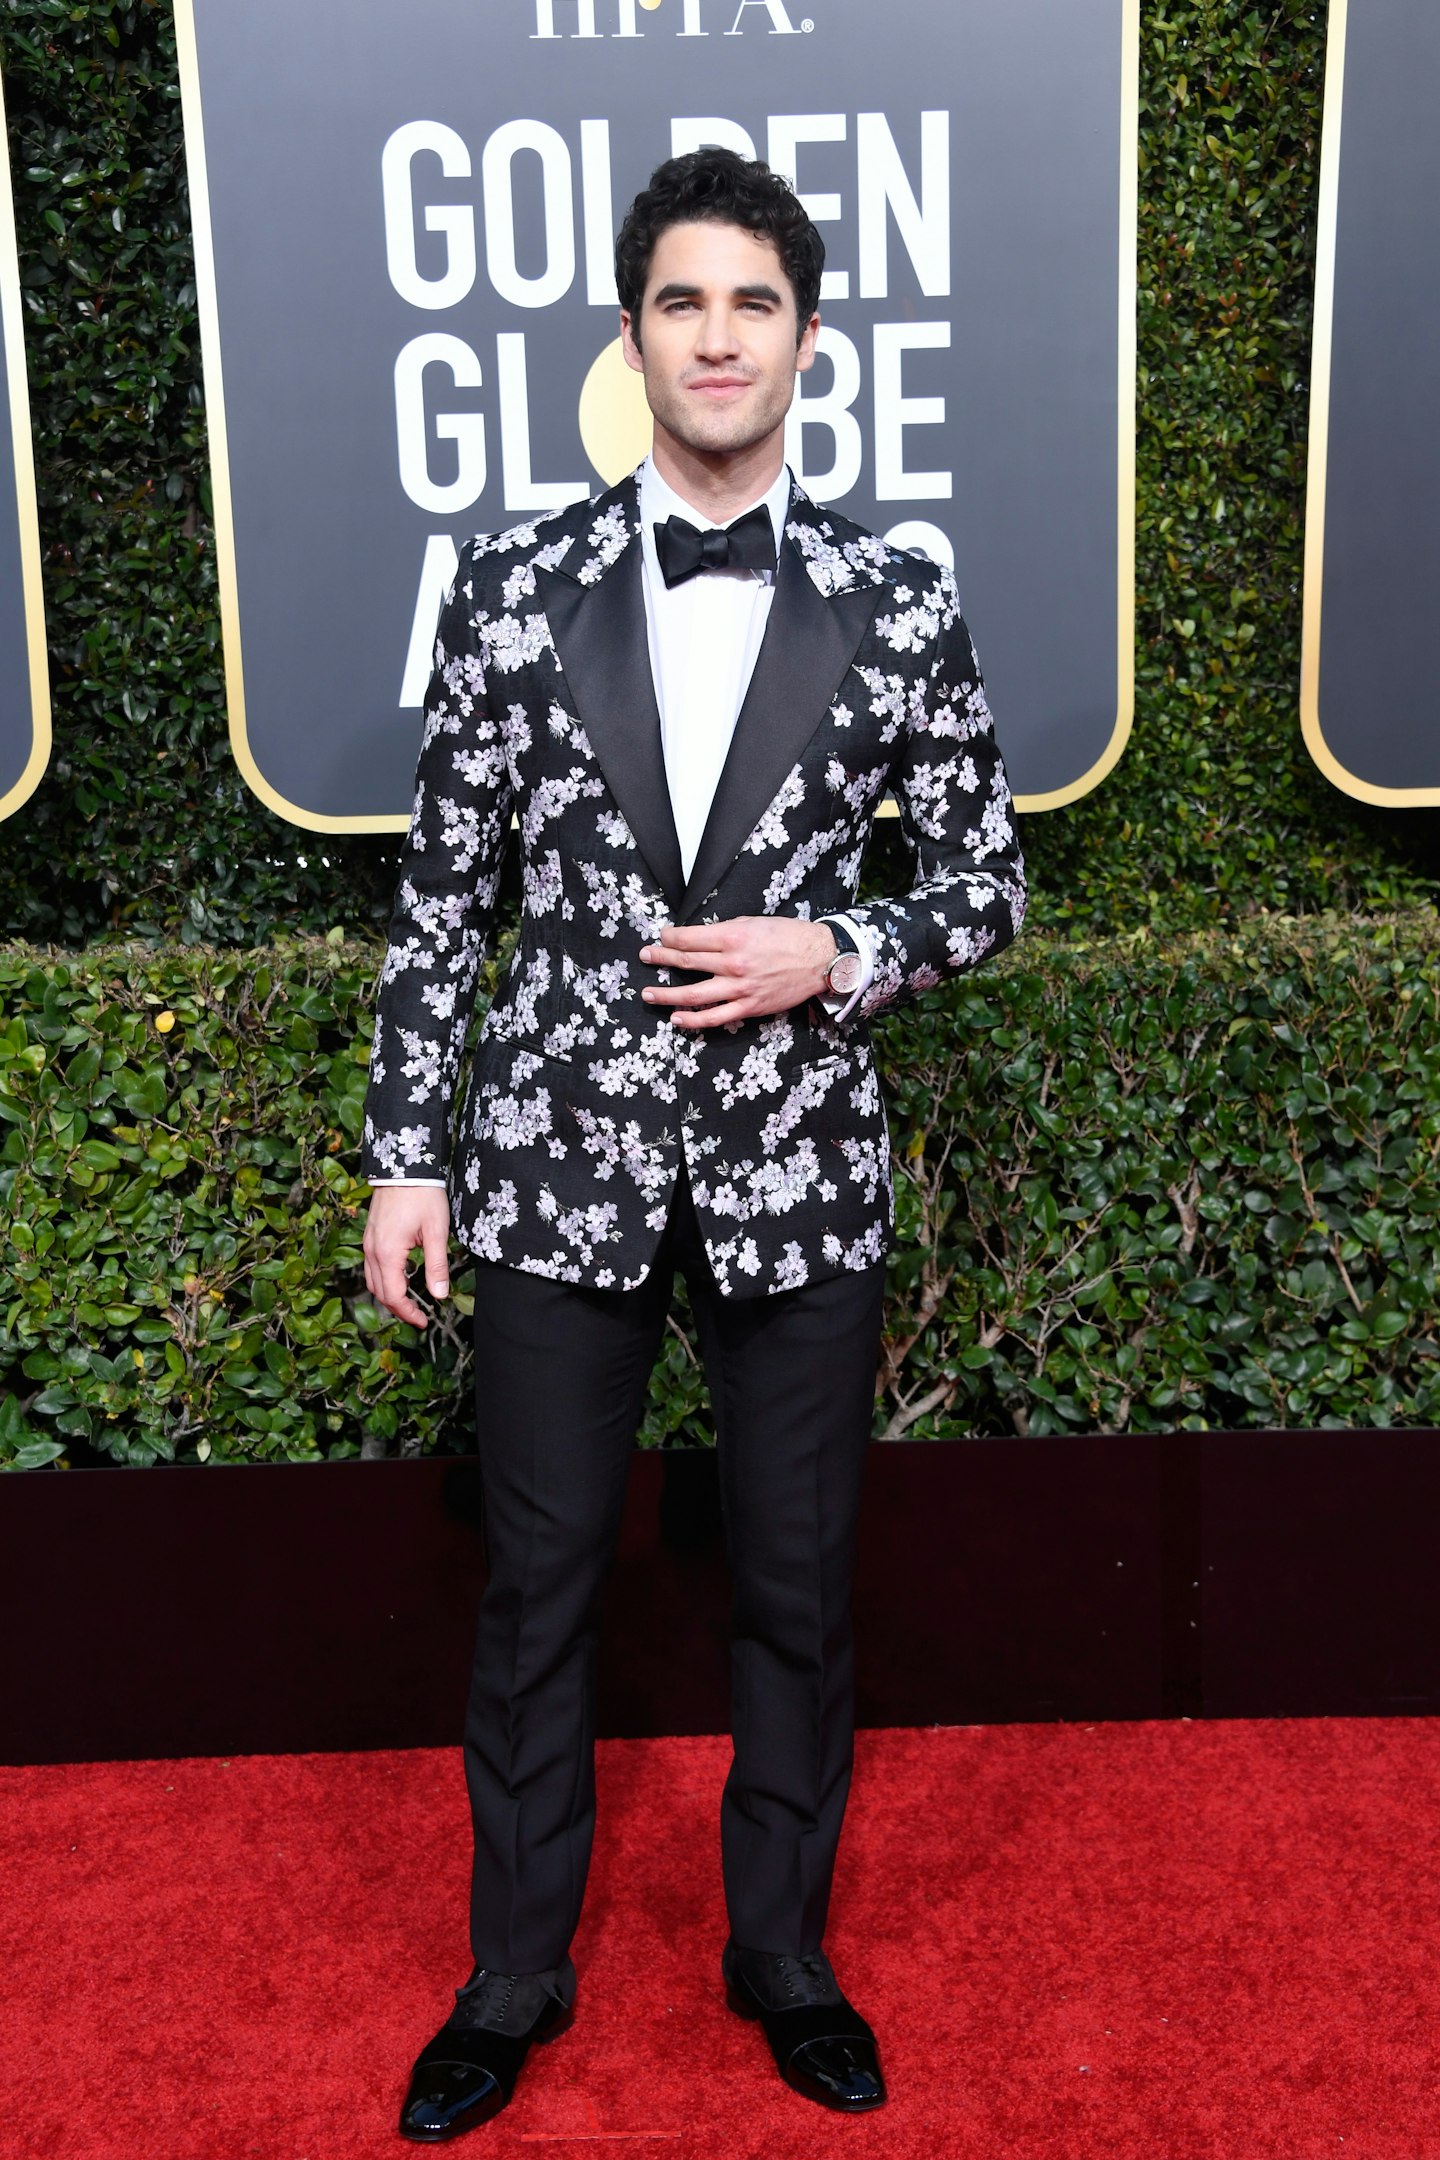 Darren Criss at the 2019 Golden Globes